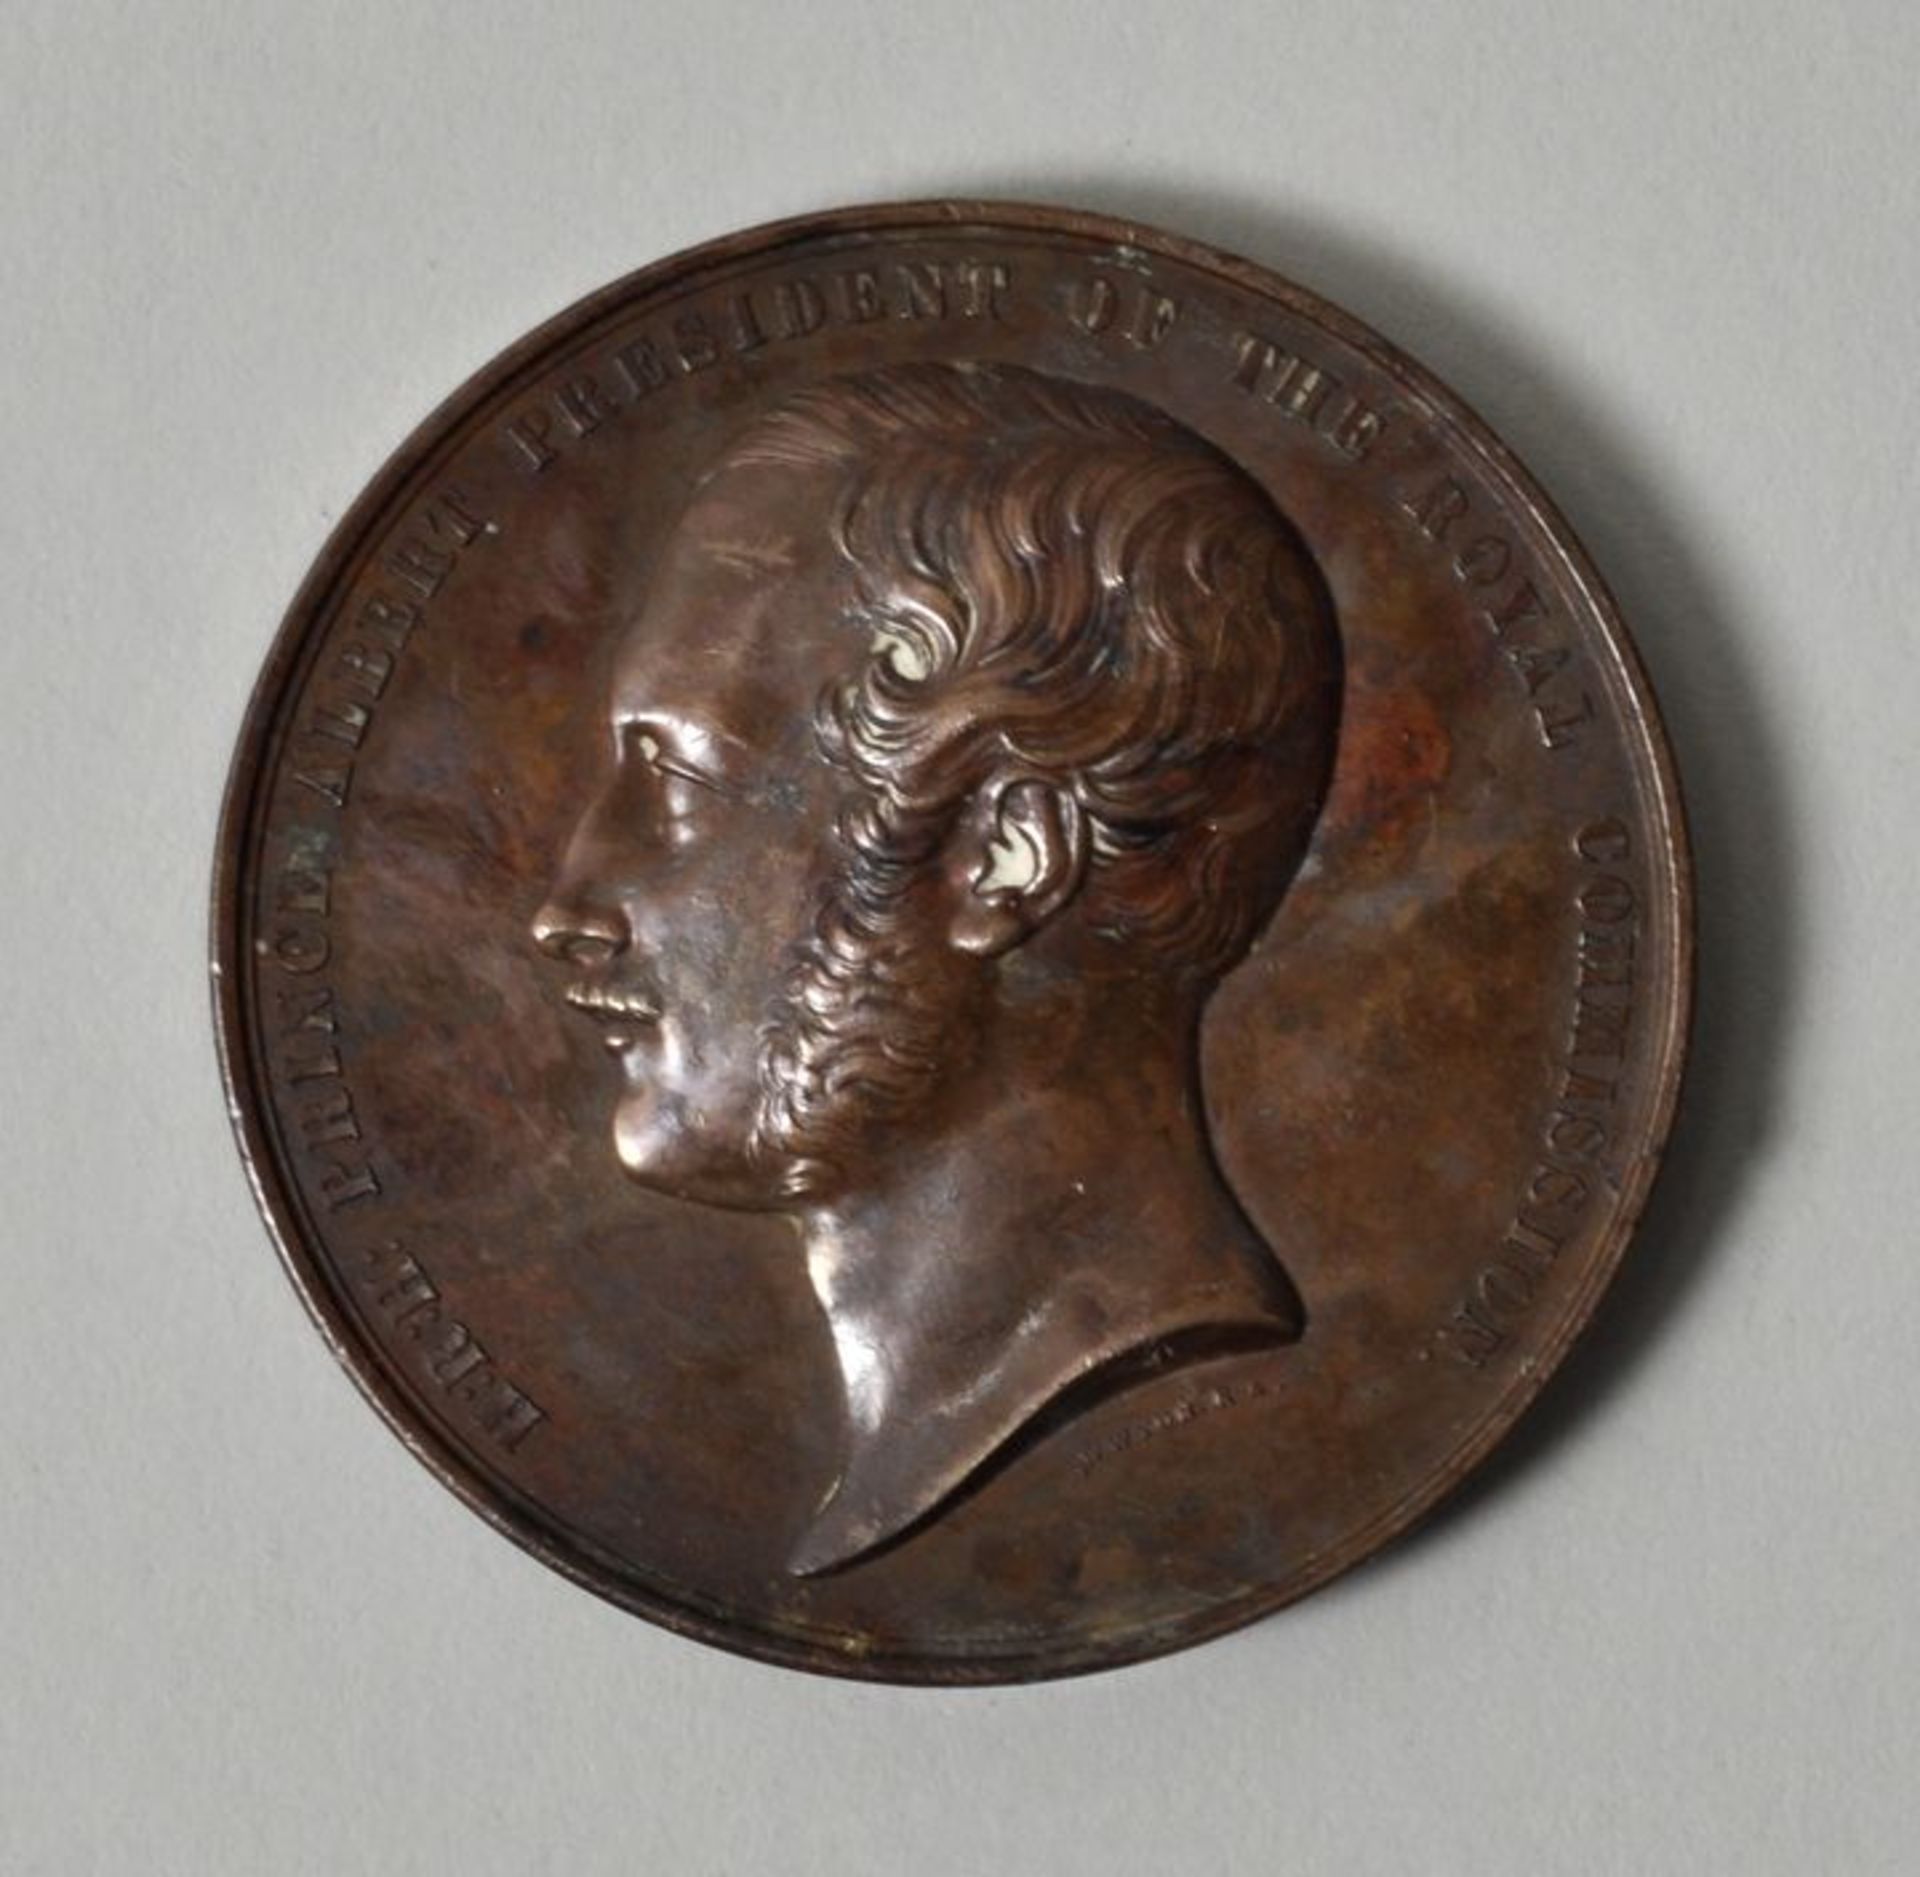 Medaille Weltausstellung 1851 in London in Bronze, 1851Modelleur William Wyon (1795-1851). Kupfer,